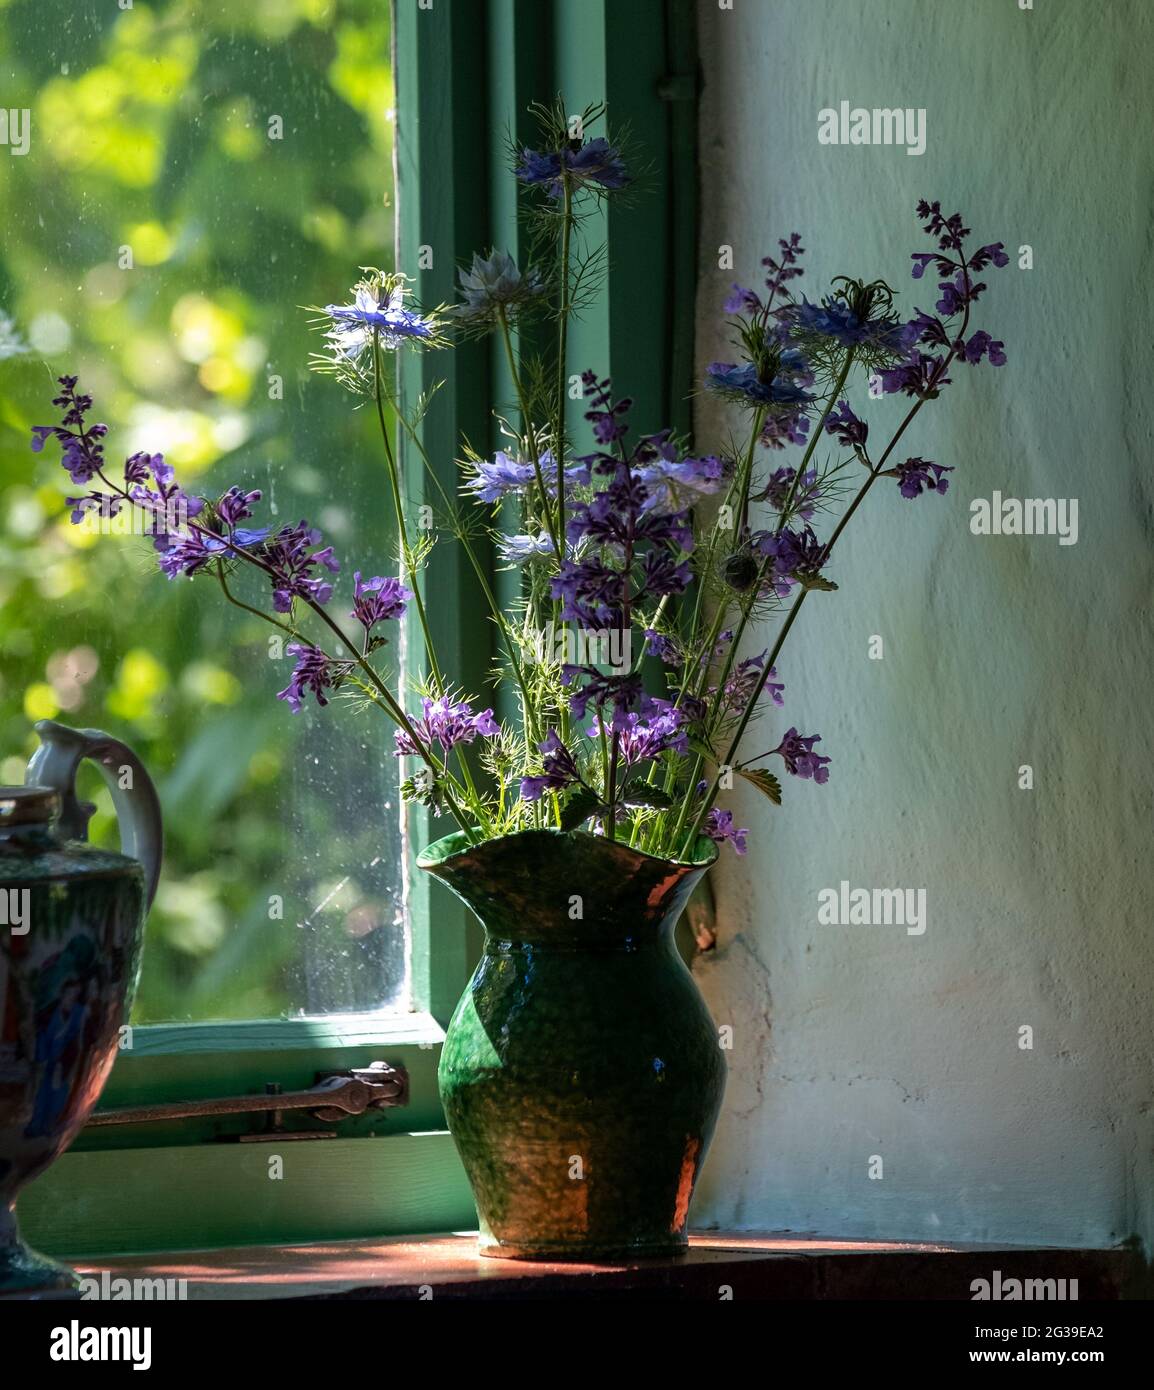 Superbes fleurs et feuillages, photographiés à la Maison de Monk, dans le jardin de la maison de Woolf en Virginie, à Rodmell, dans l'est du Sussex, au Royaume-Uni. Banque D'Images